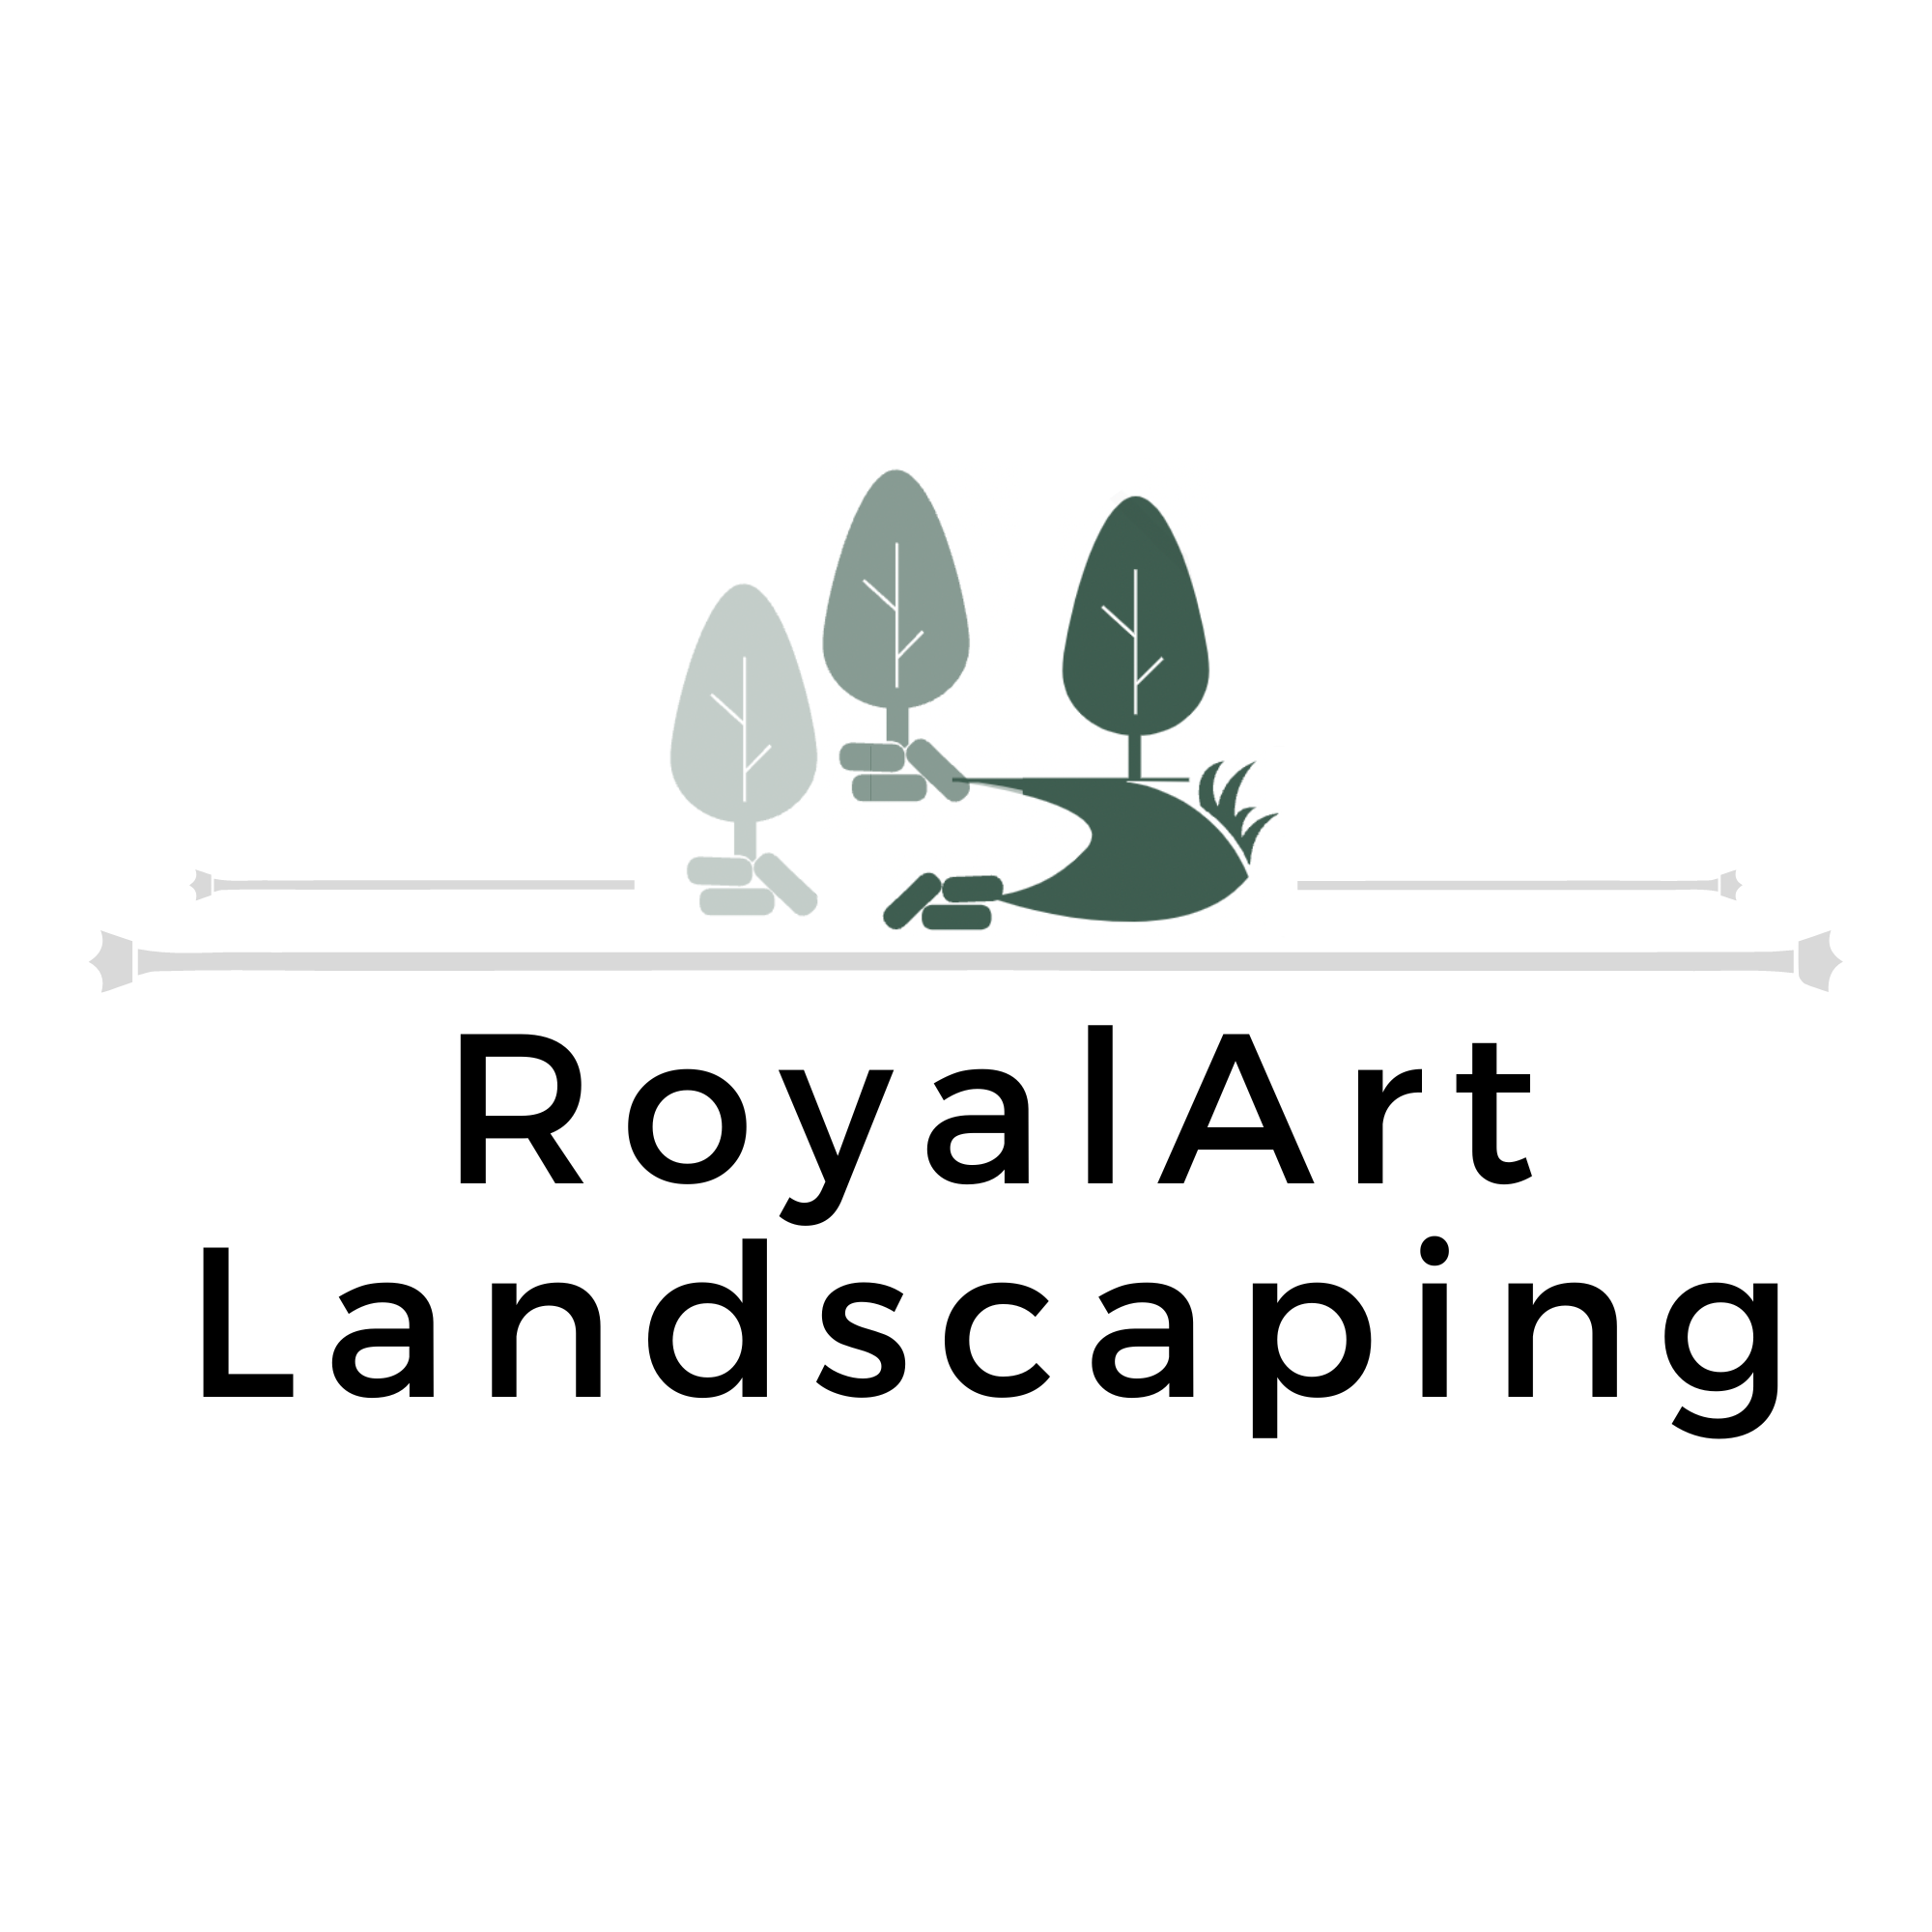 RoyalArt Landscaping's logo